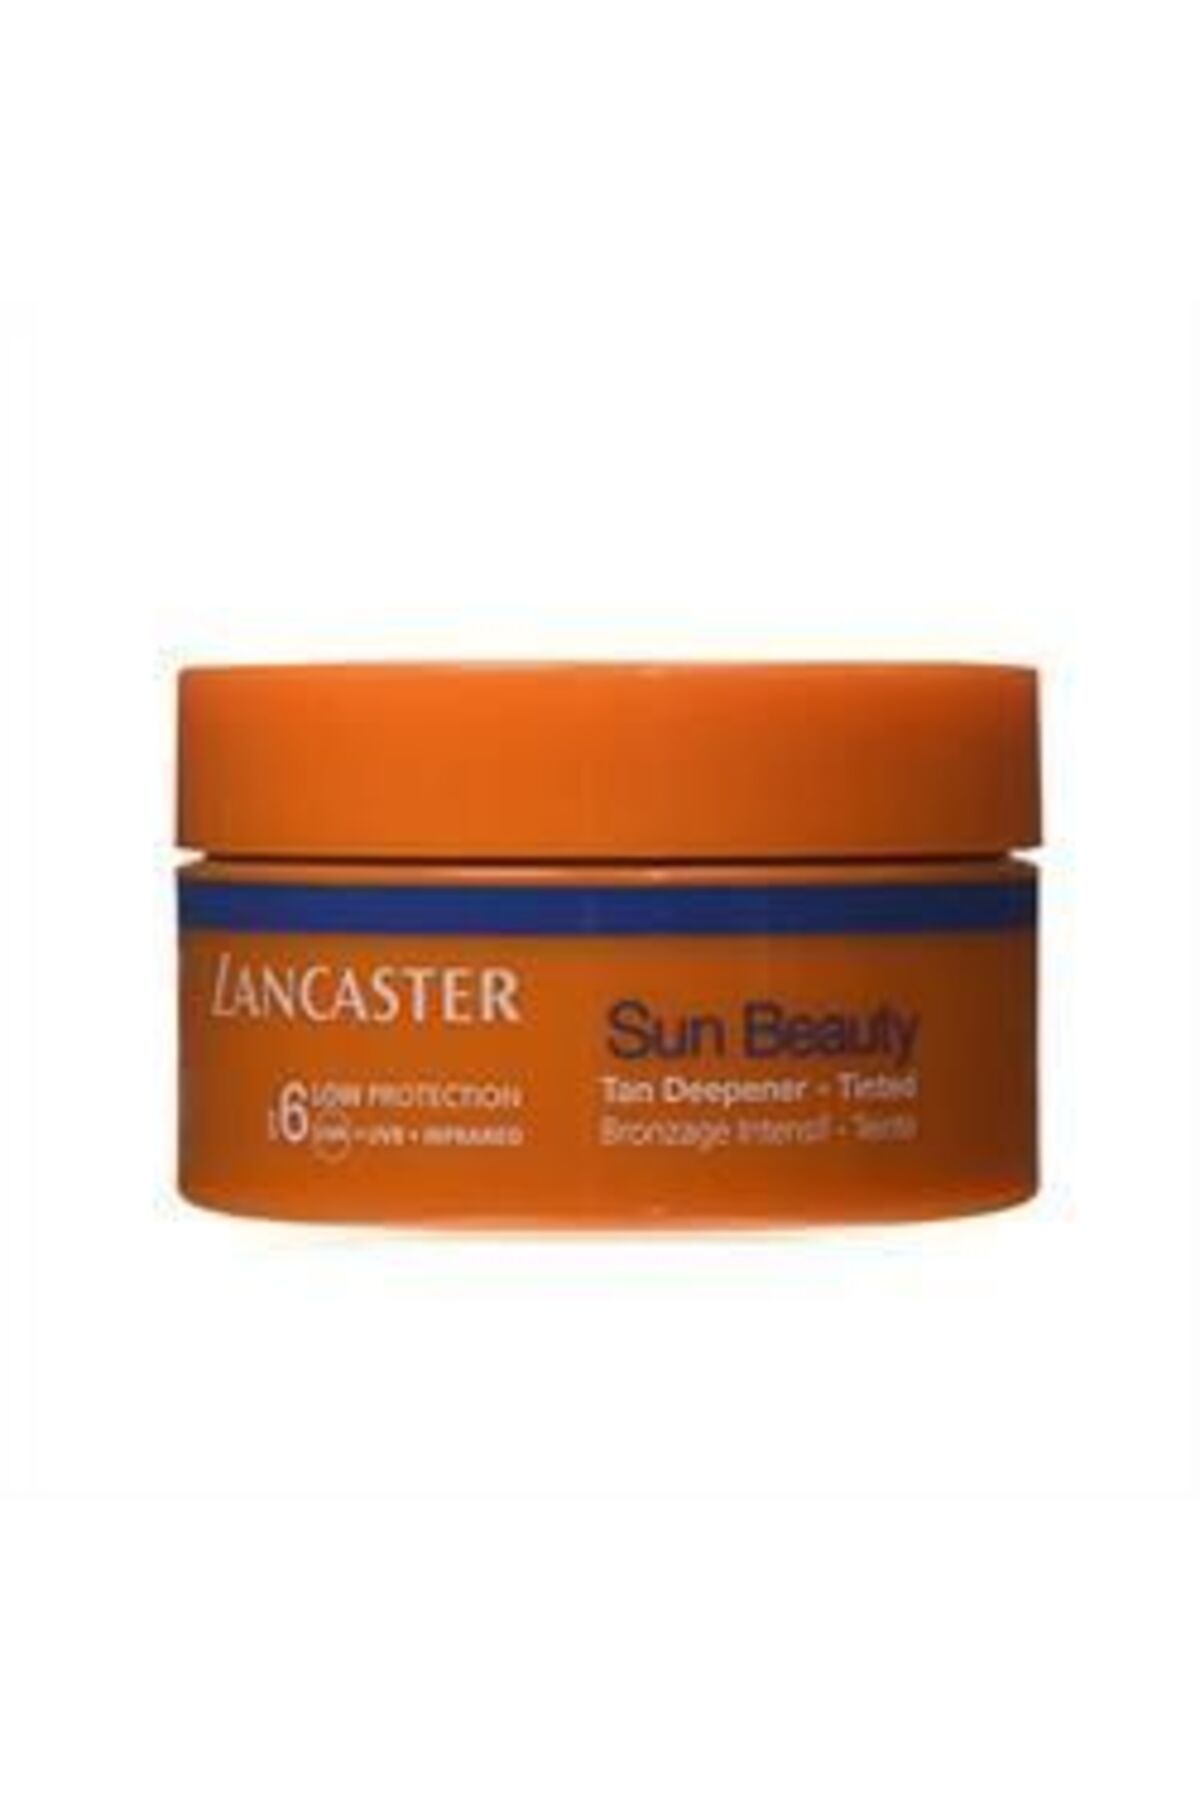 Genel Markalar ( KİL MASKESİ HEDİYE ) Lancaster Sun Beauty Tan Deepener Spf 06 200 ml ( 1 ADET )